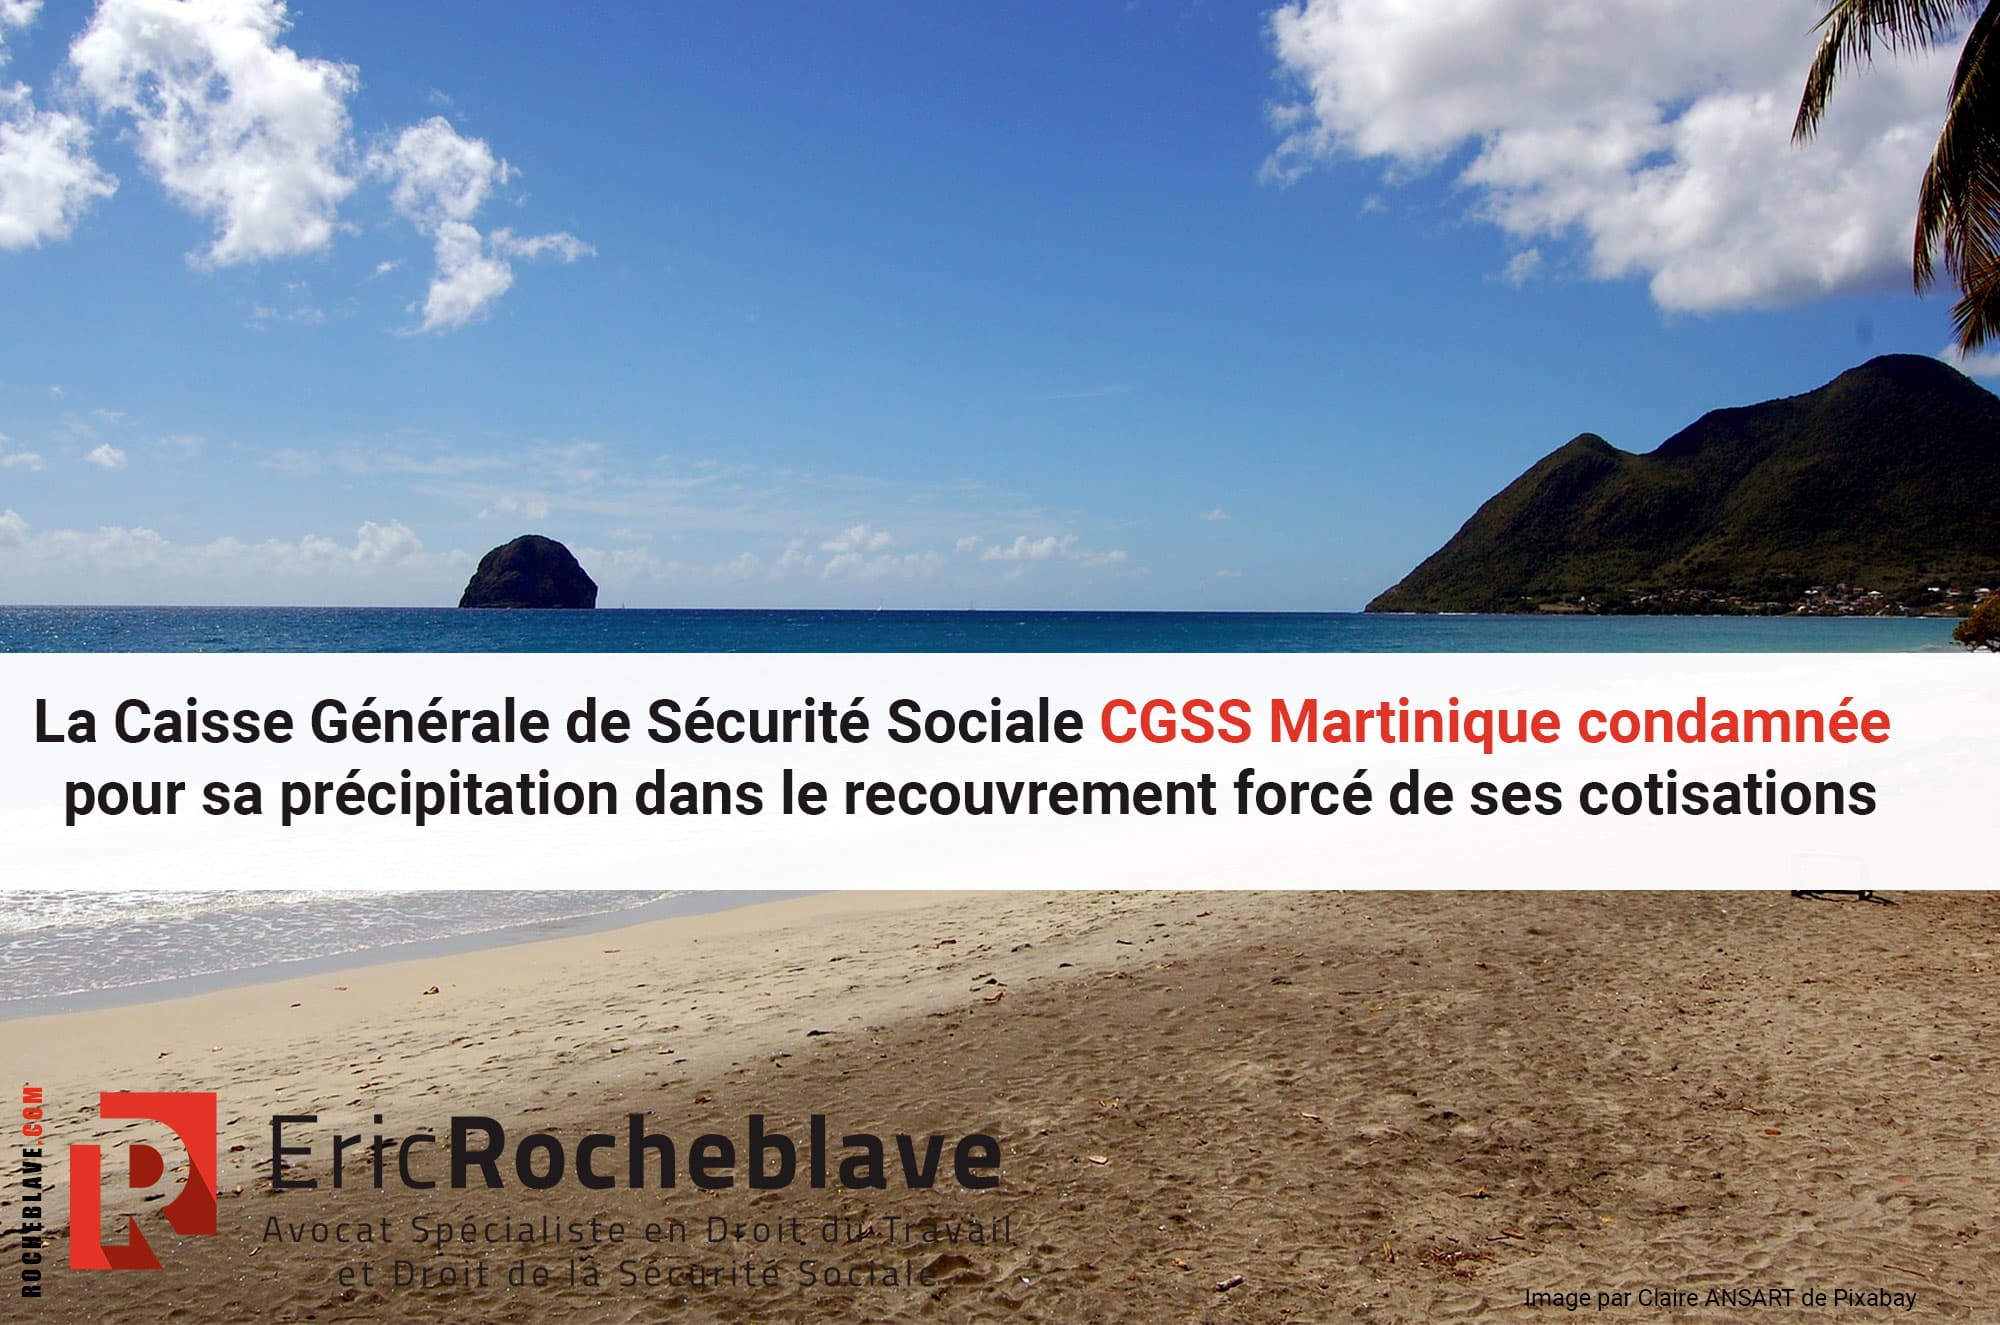 La Caisse Générale de Sécurité Sociale CGSS Martinique condamnée pour sa précipitation dans le recouvrement forcé de ses cotisations